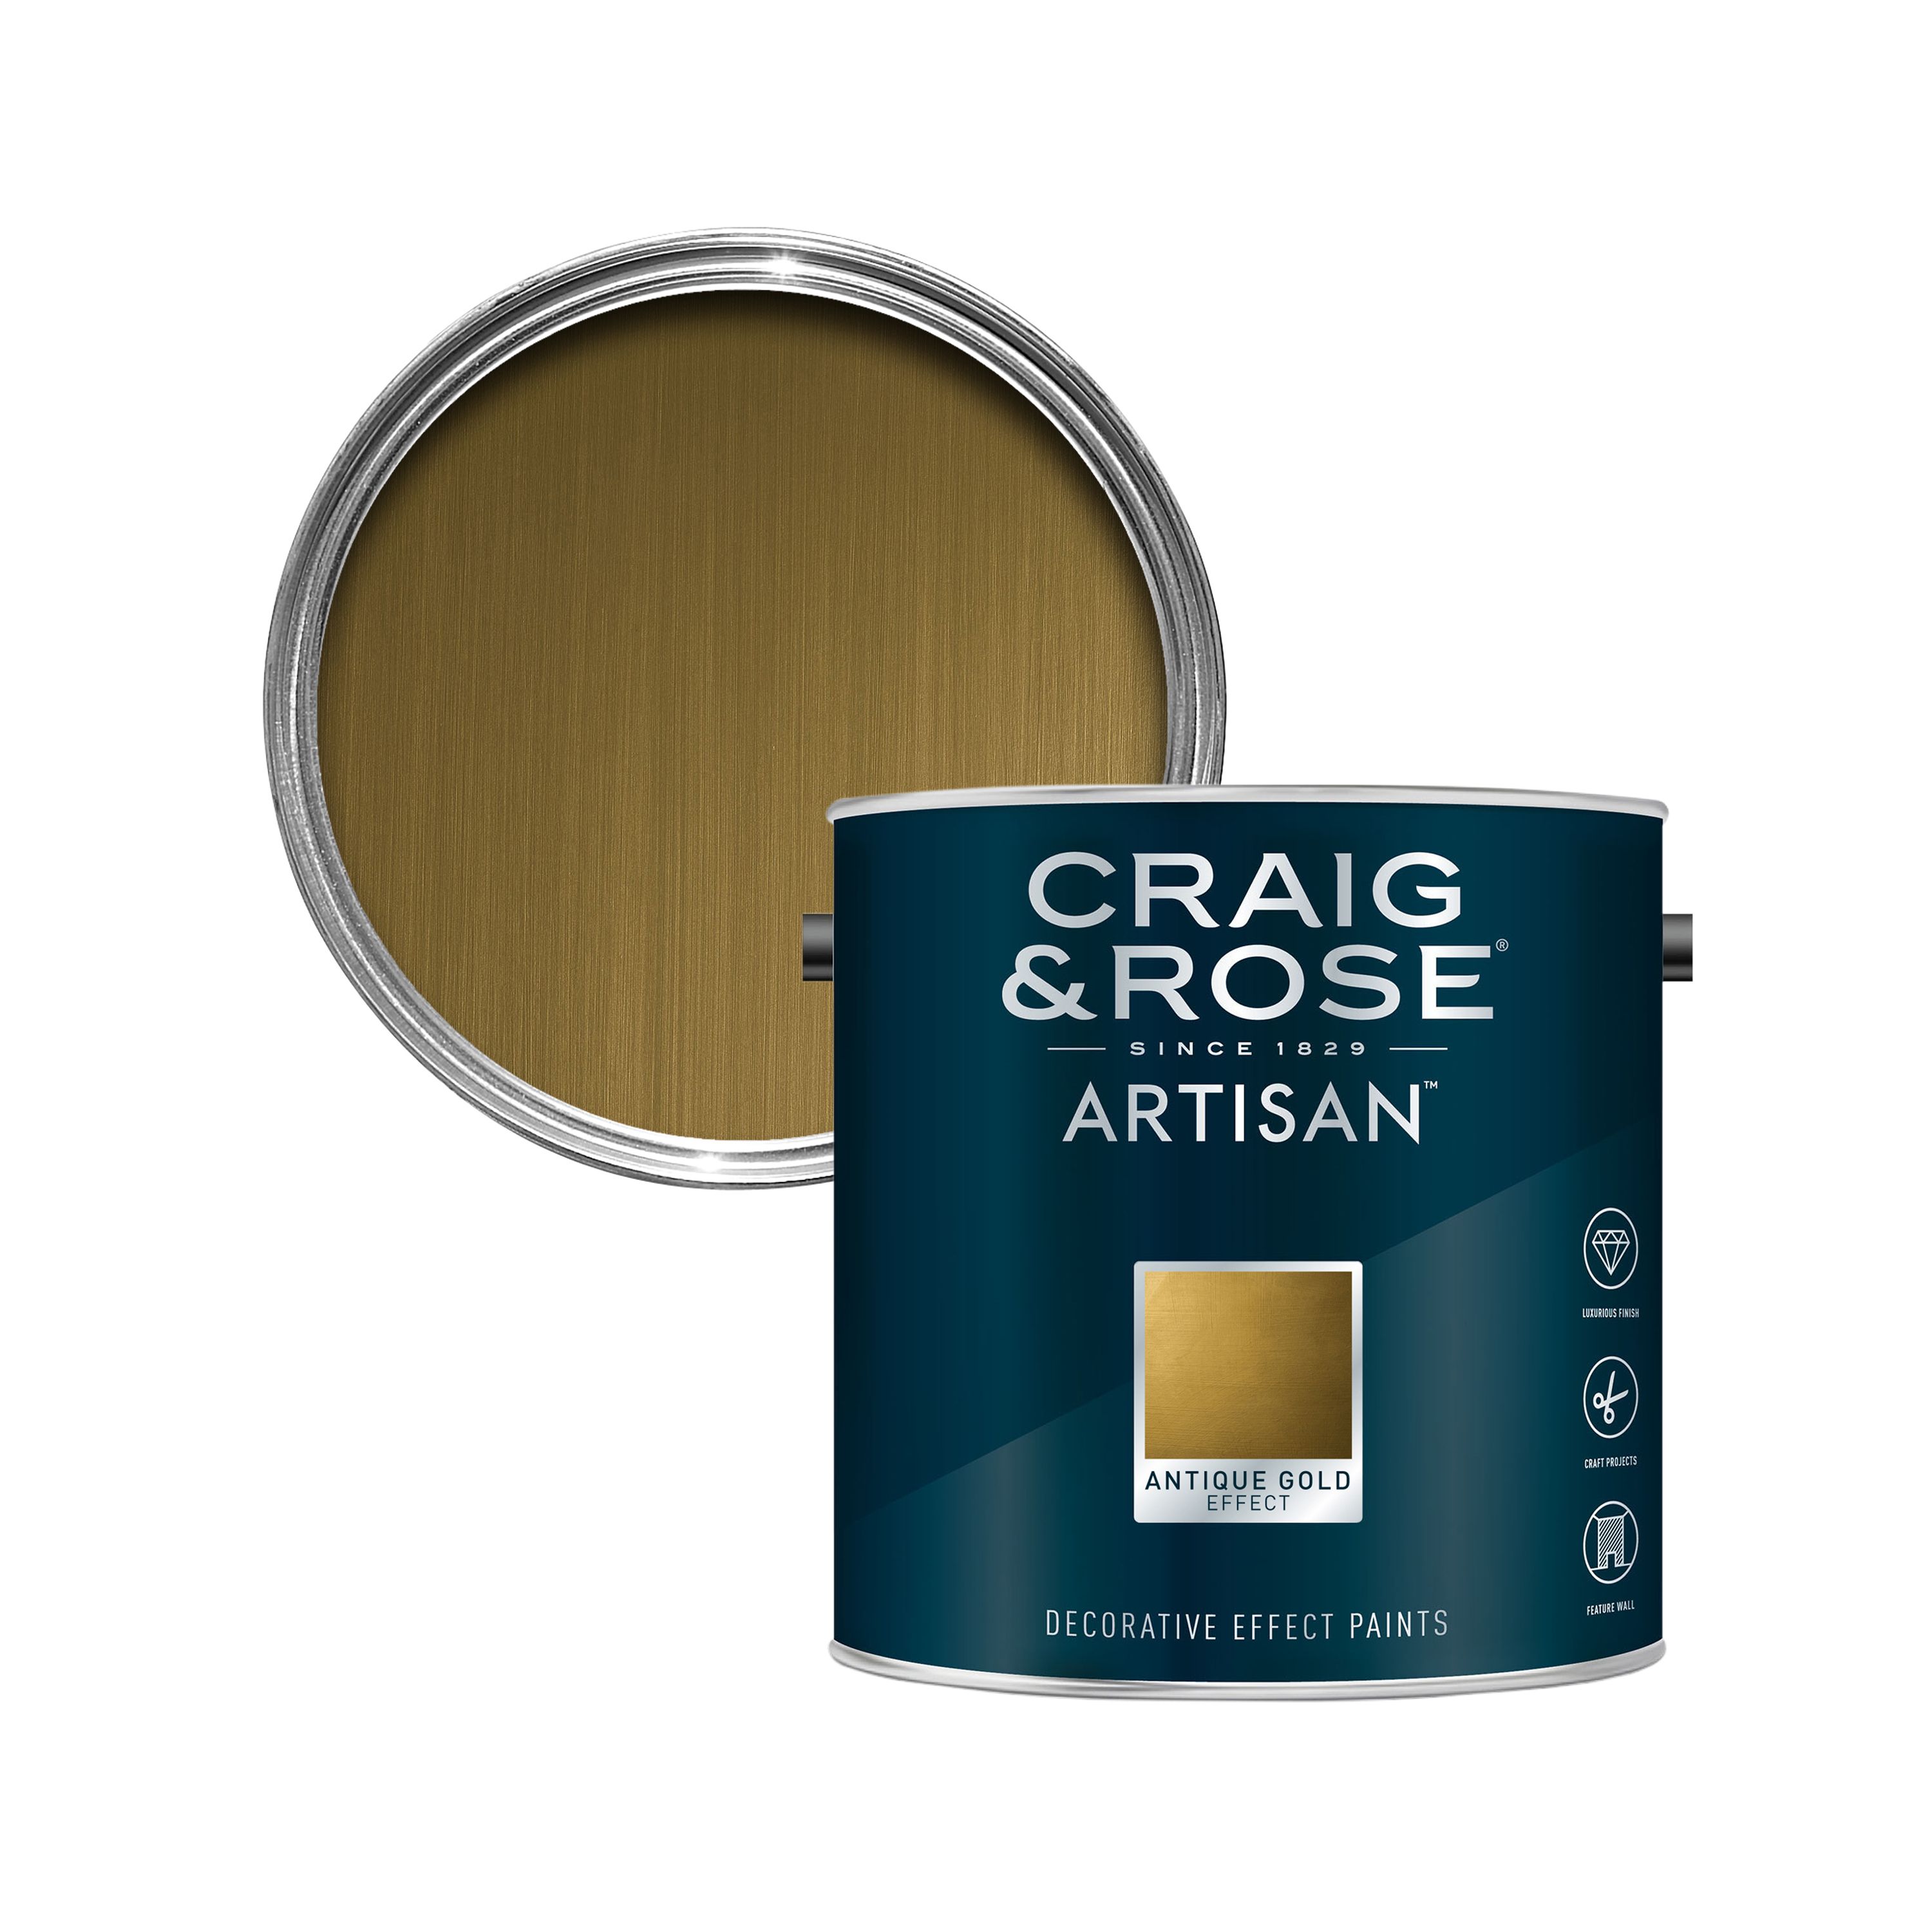 Craig & Rose Artisan Decorative Effect Paint - Antique Gold